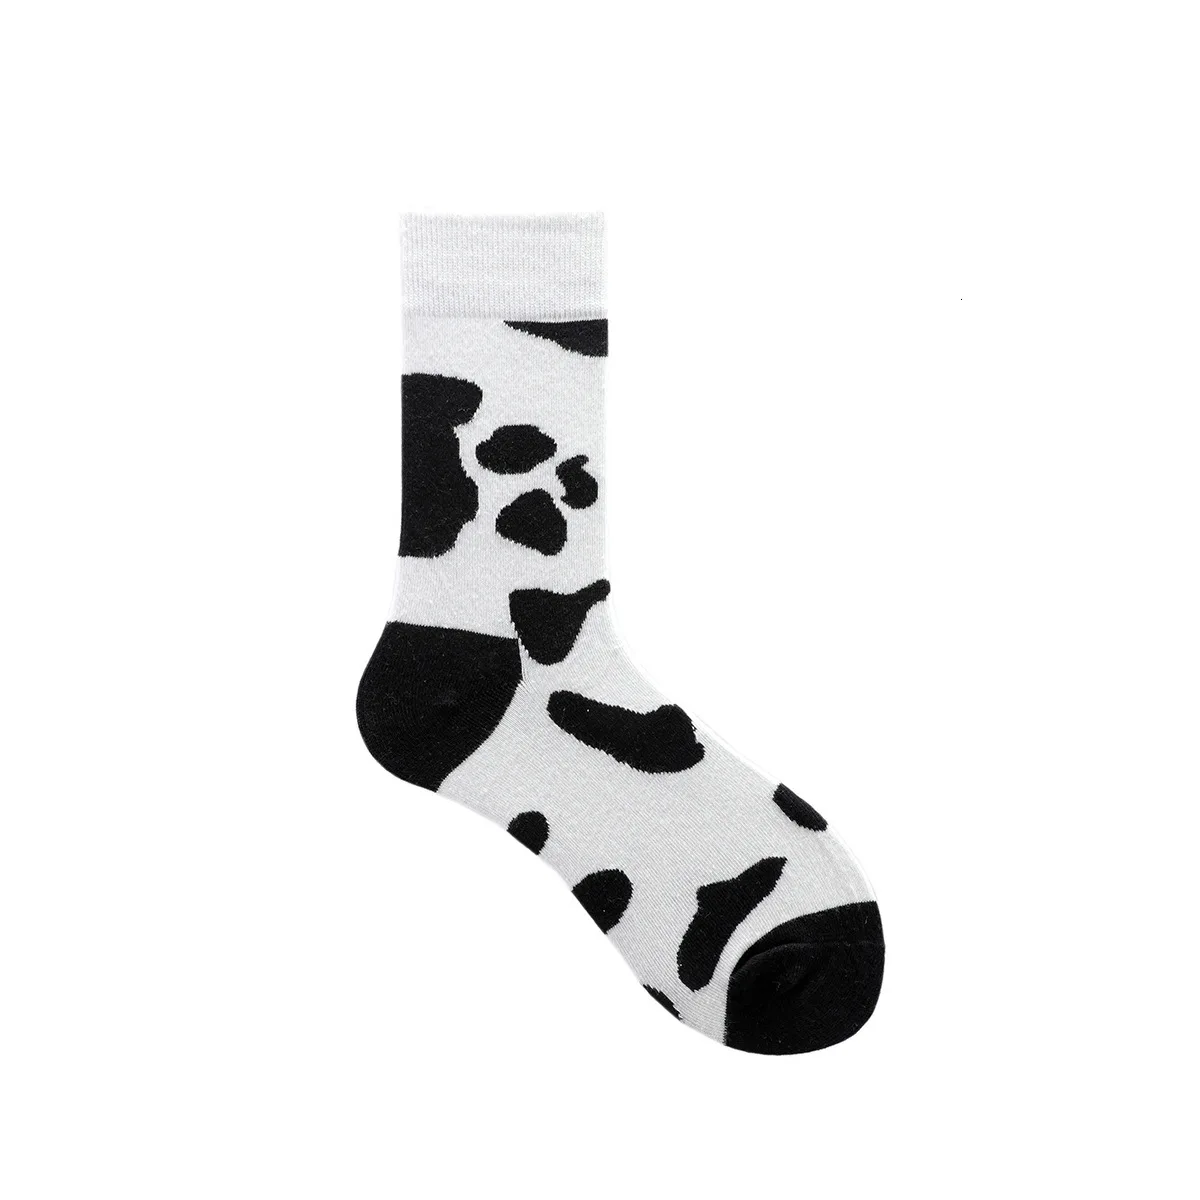 Винтажные мужские носки Harajuku Классические черно-белые полосатые клетчатые носки с принтом геометрические хип-хоп хлопковые уличные новые носки - Цвет: 4